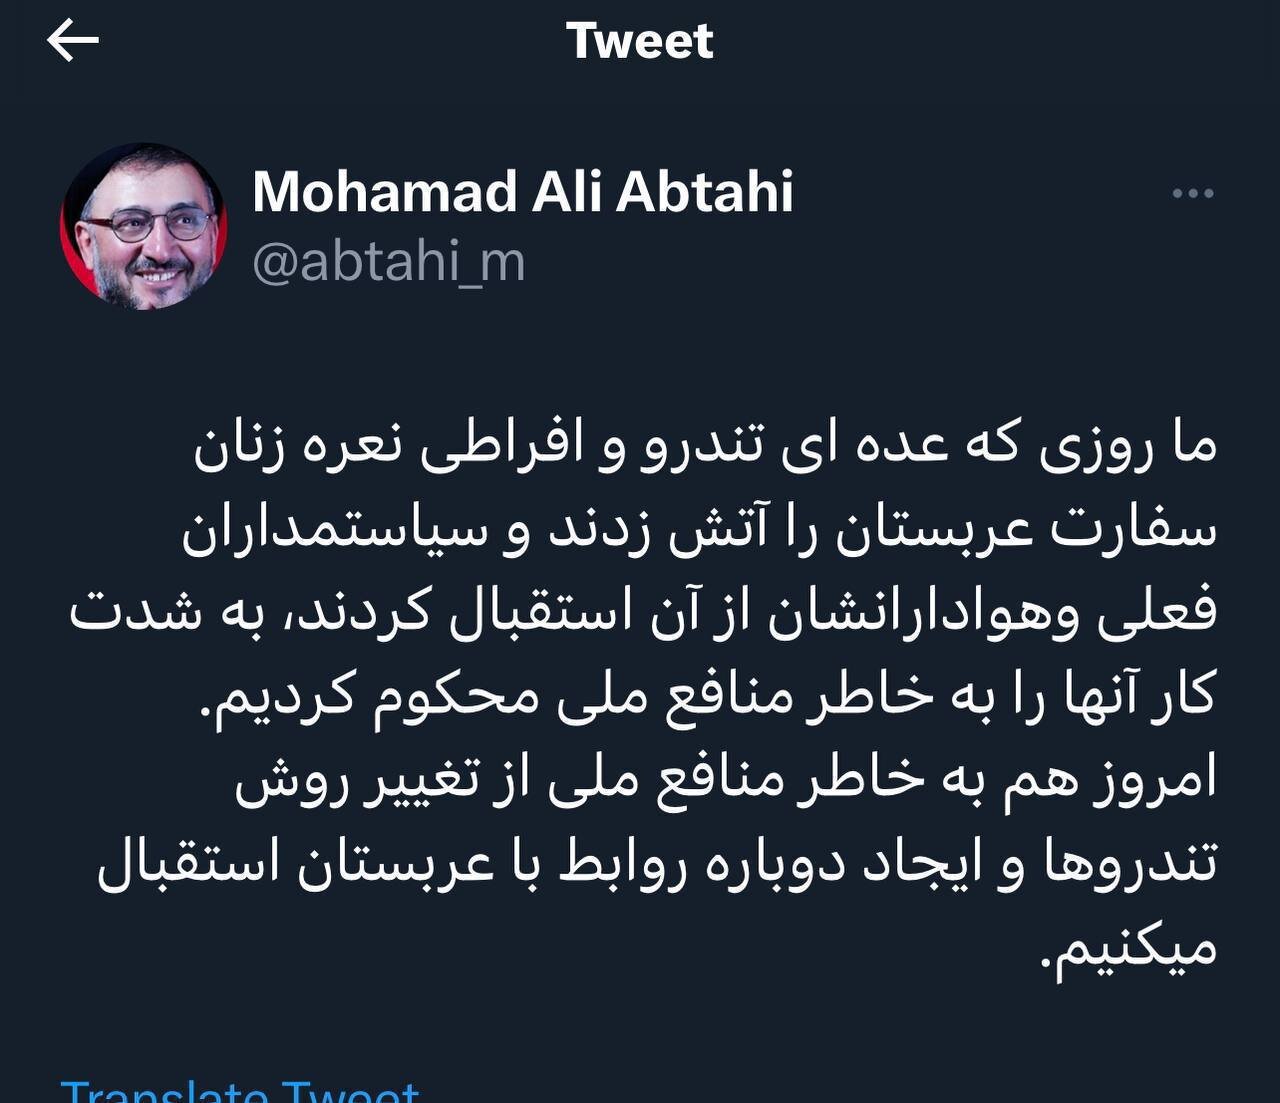 محمد علی ابطحی:روزی که عده ای افراطی نعره زنان سفارت عربستان را آتش زدندو سیاستمداران فعلی از آن استقبال کردند ما بشدت کار آنها را محکوم‌کردیم